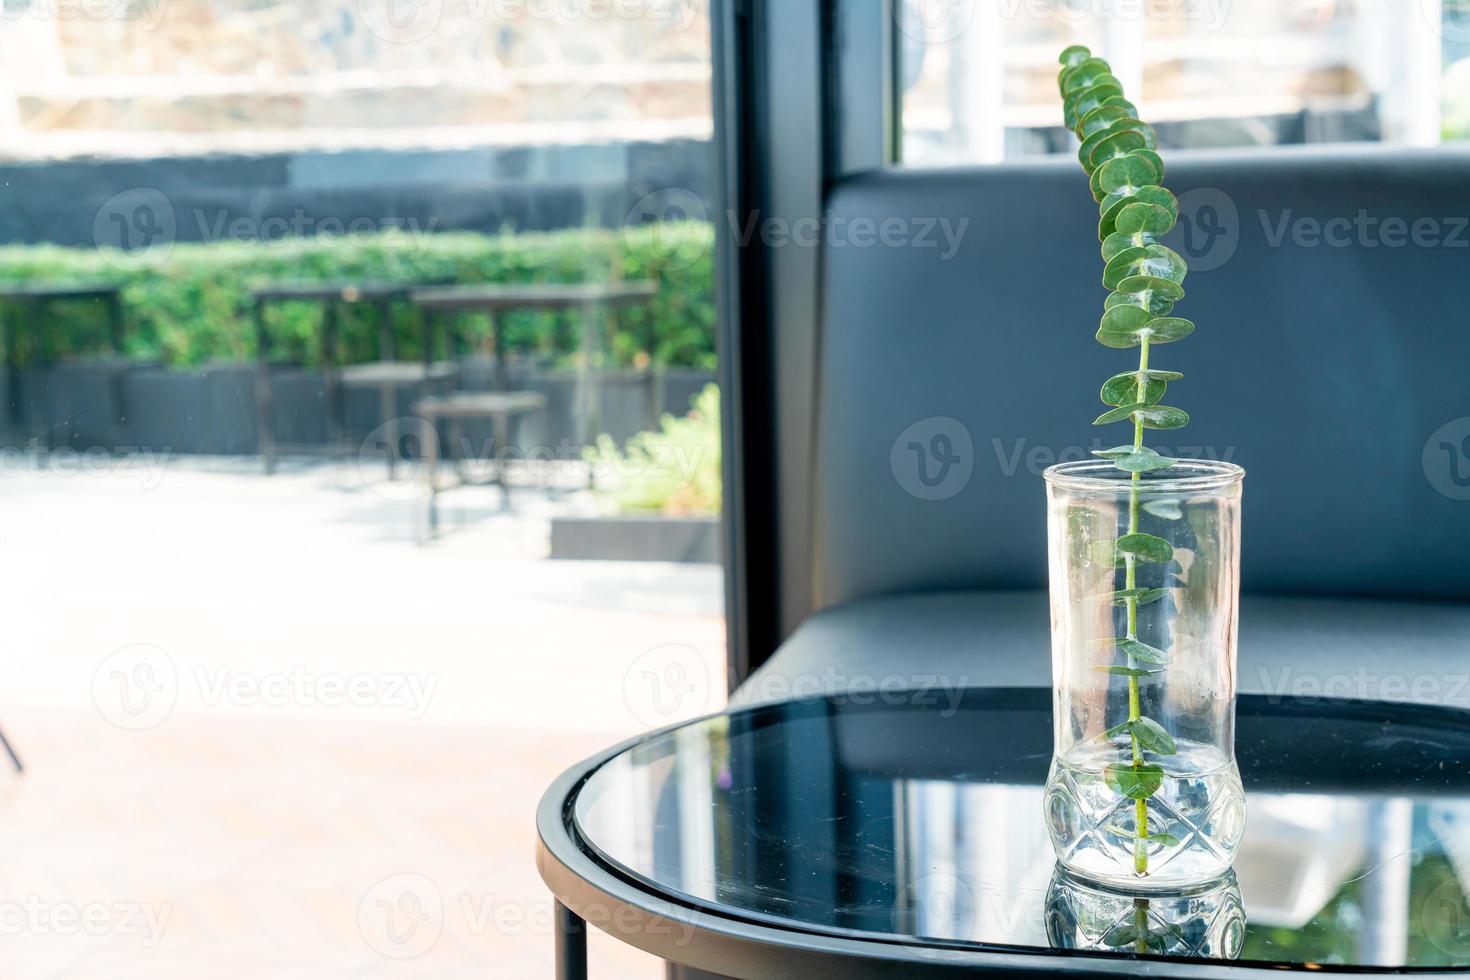 Pflanze in Vasendekoration auf dem Tisch im Wohnzimmer foto